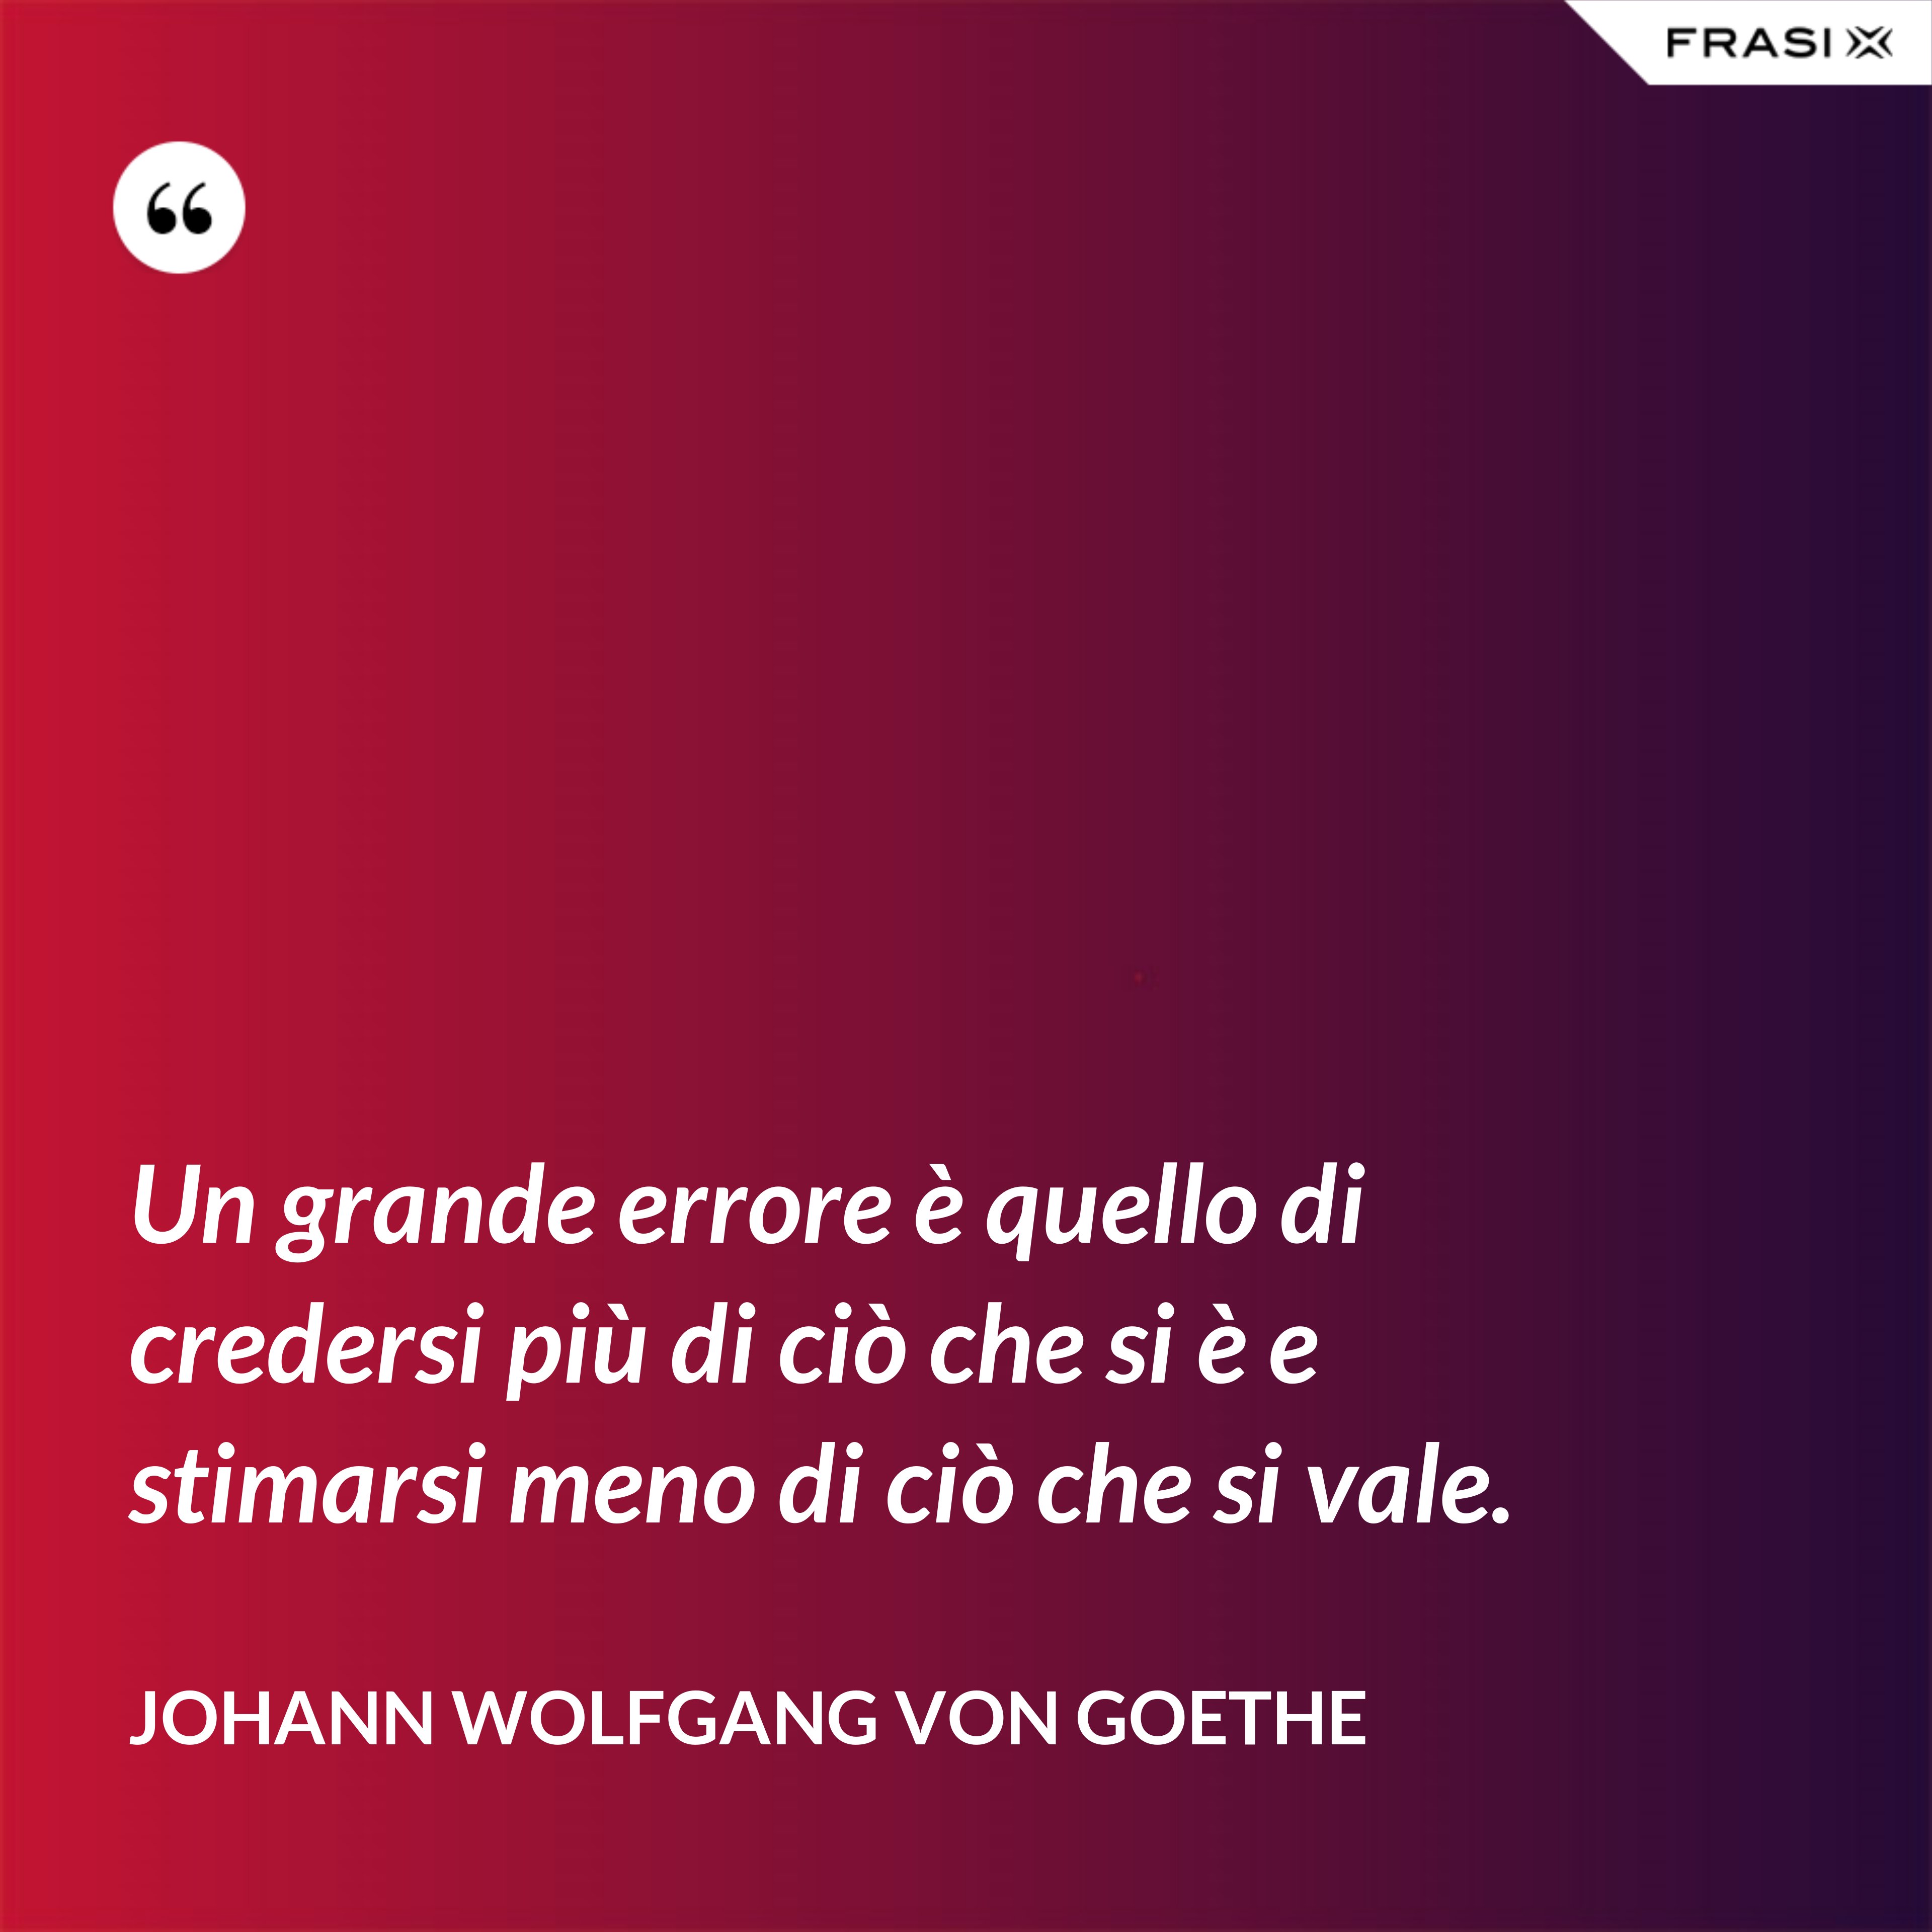 Un grande errore è quello di credersi più di ciò che si è e stimarsi meno di ciò che si vale. - Johann Wolfgang von Goethe